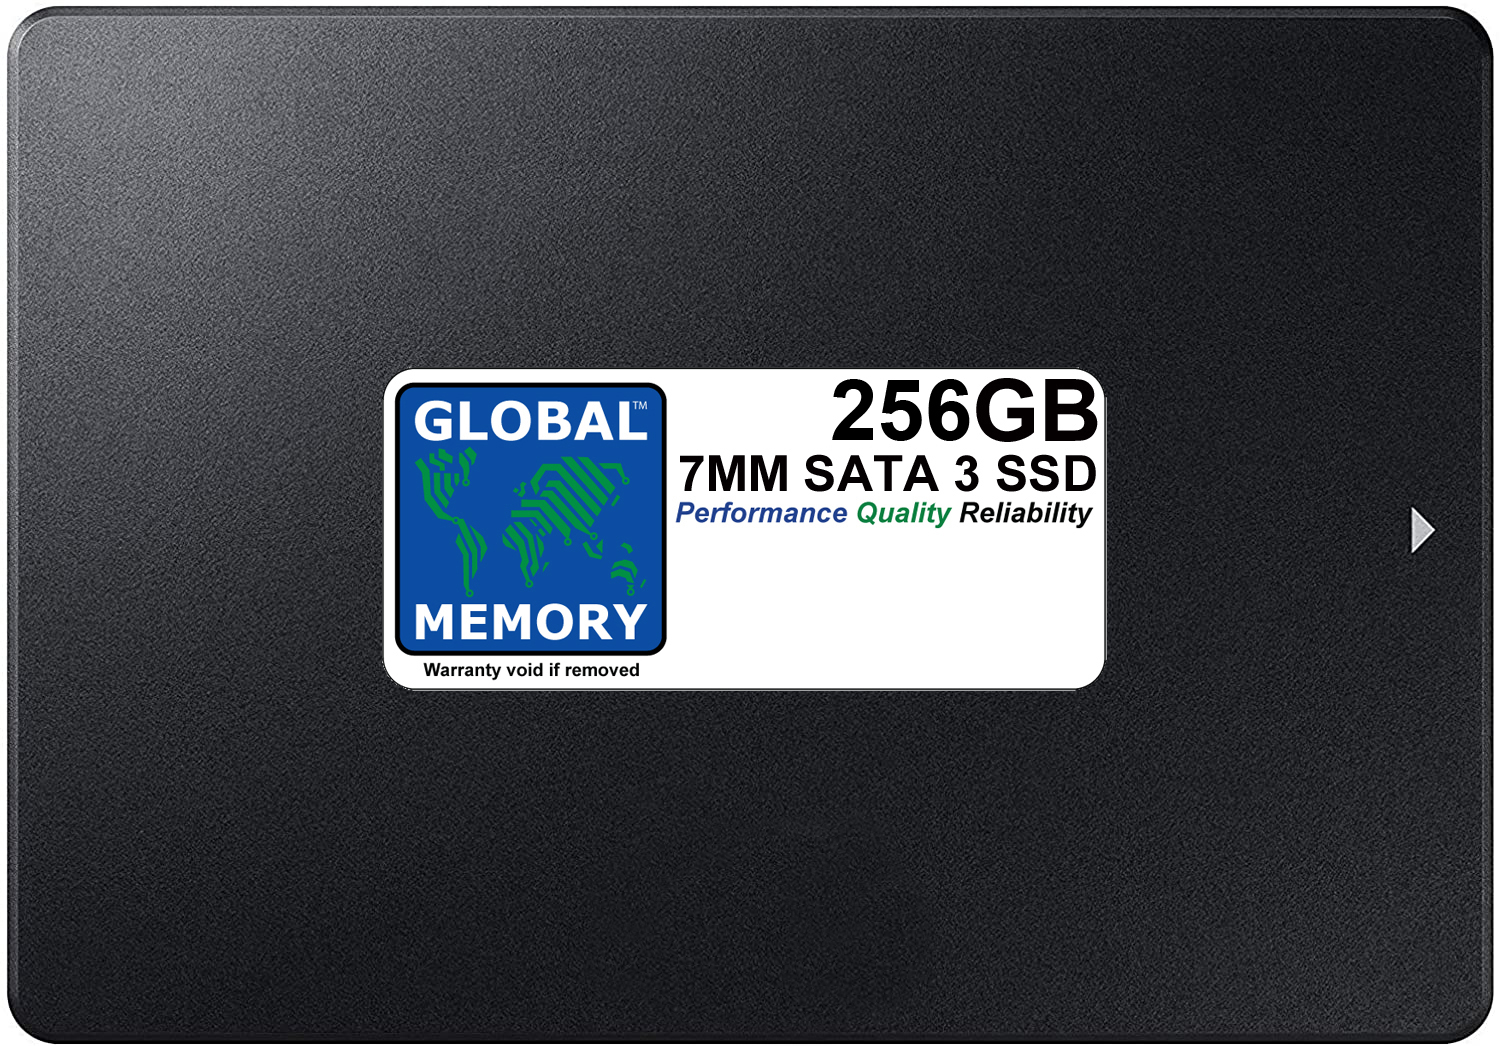 256GB 7mm 2.5" SATA 3 SSD FOR MACBOOK PRO NON RETINA (2011 - 2012) - Click Image to Close